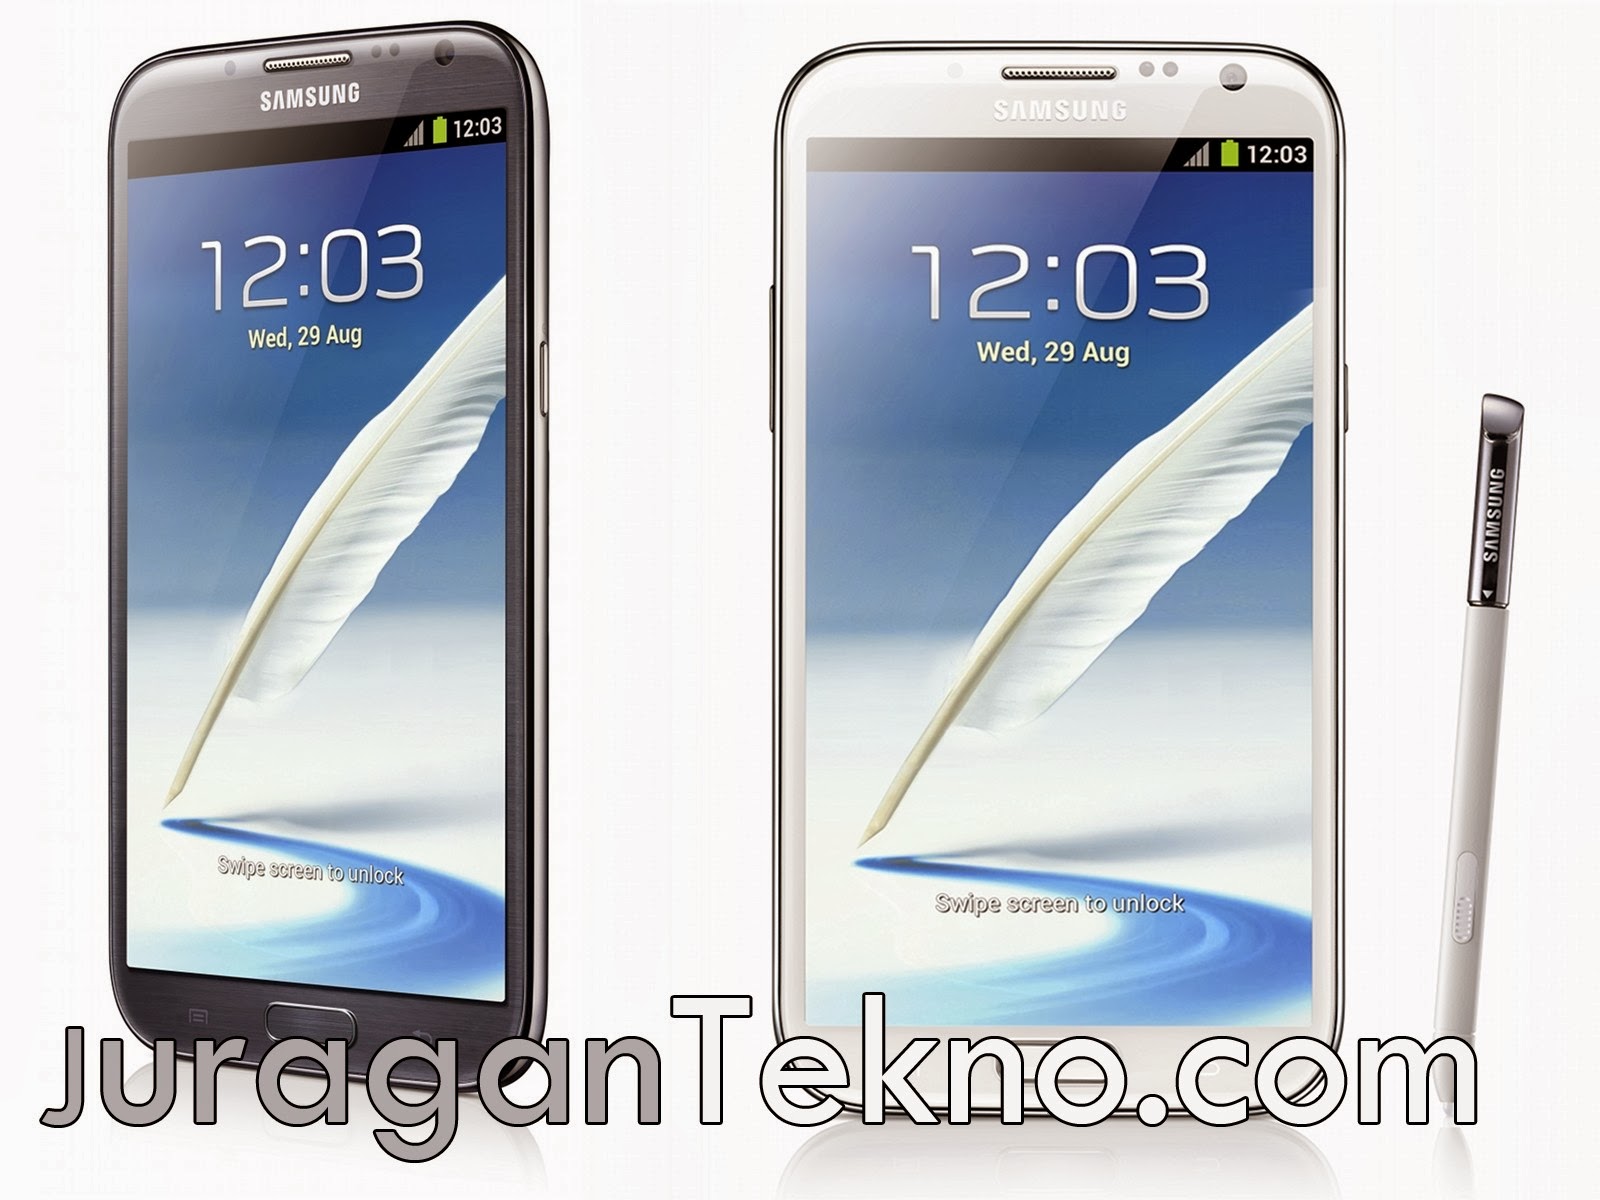 Daftar Harga Handphone Samsung Terbaru Januari 2014.jpg